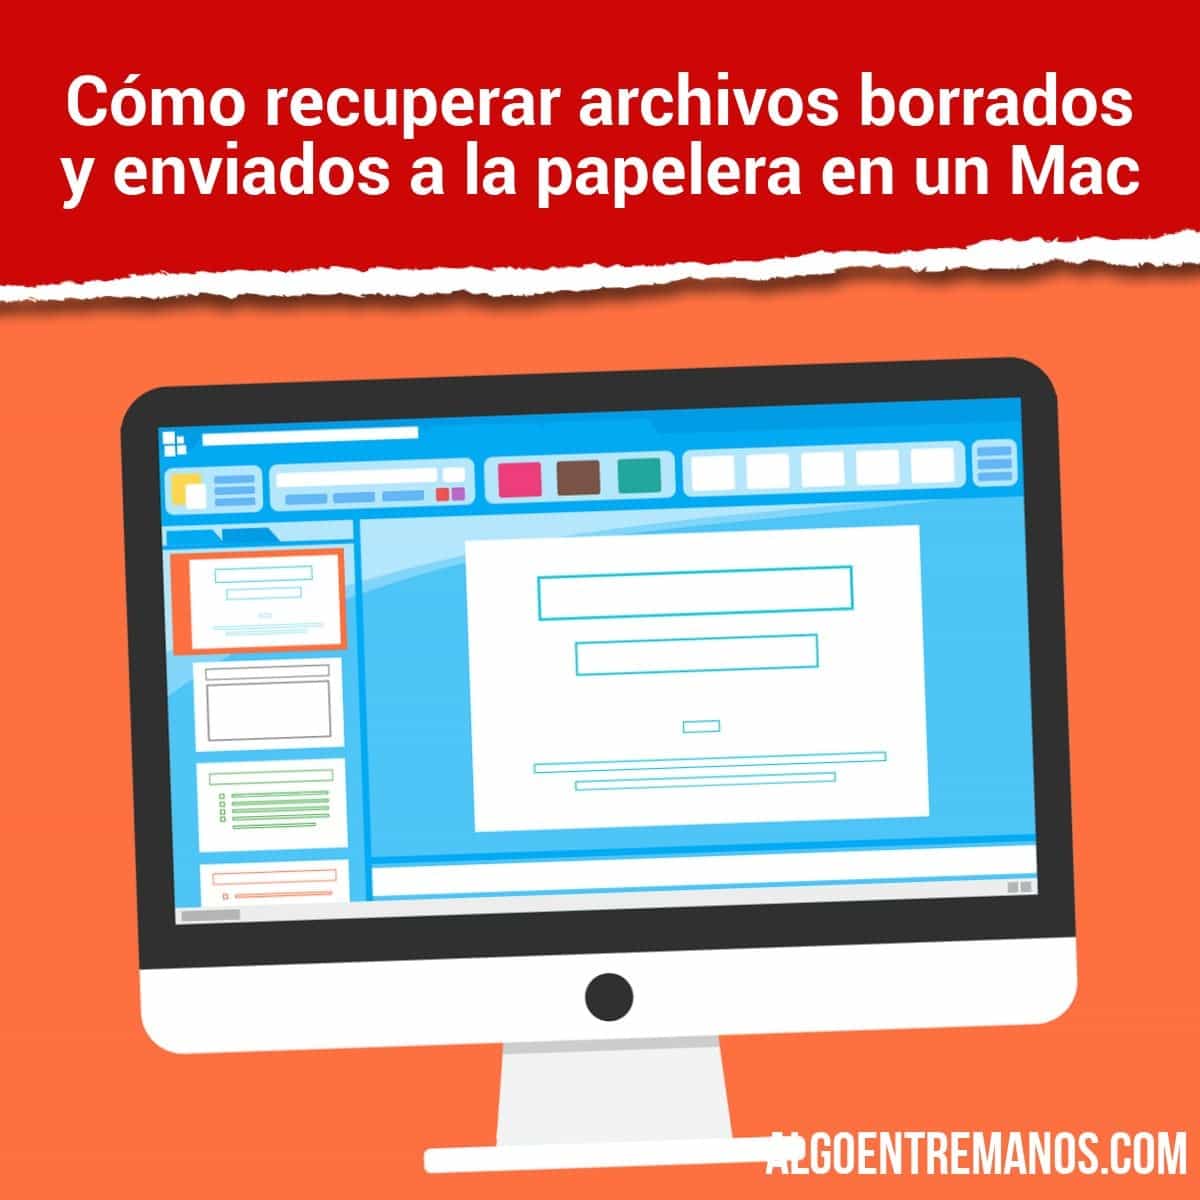 Cómo recuperar archivos borrados y enviados a la papelera en un Mac